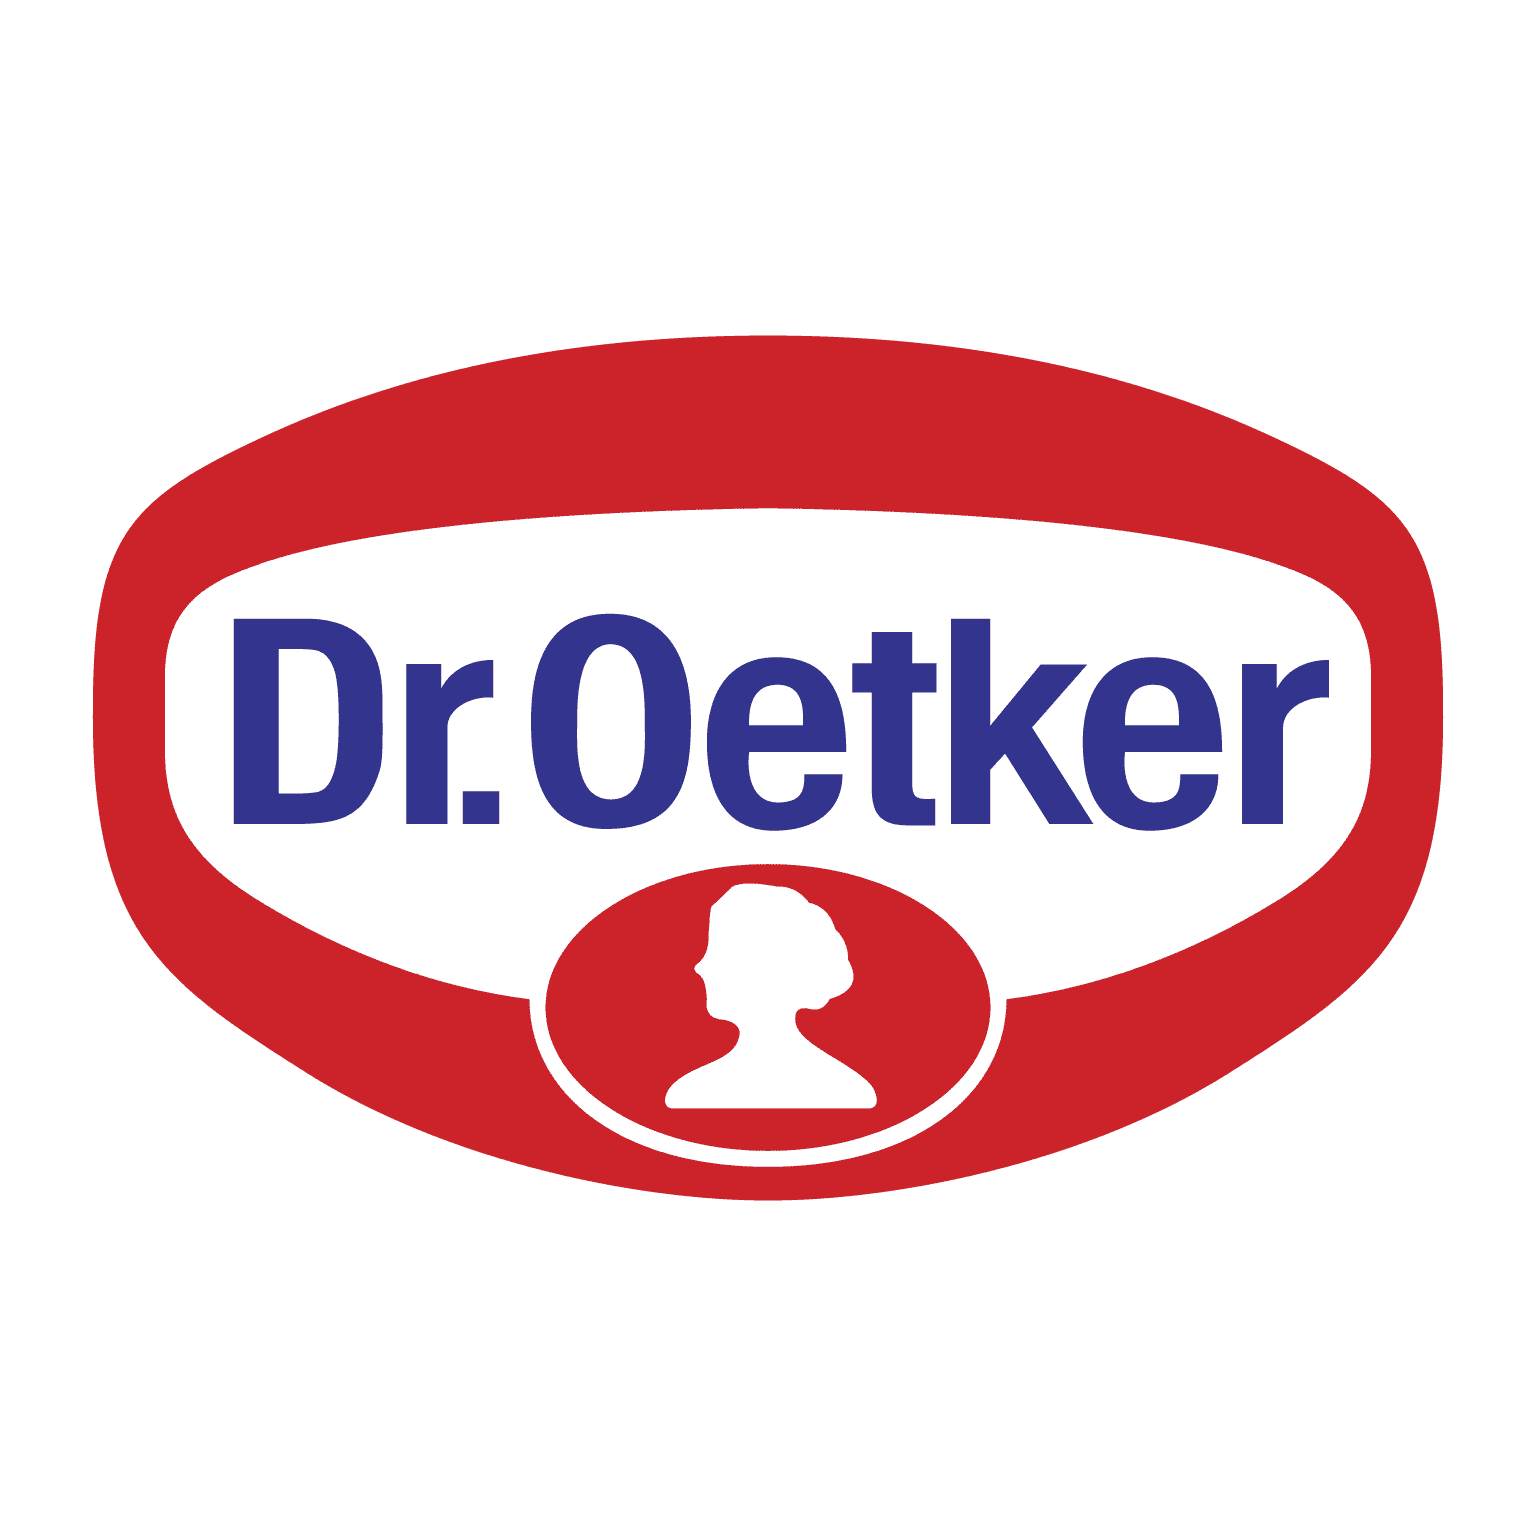 brasão dr oetker